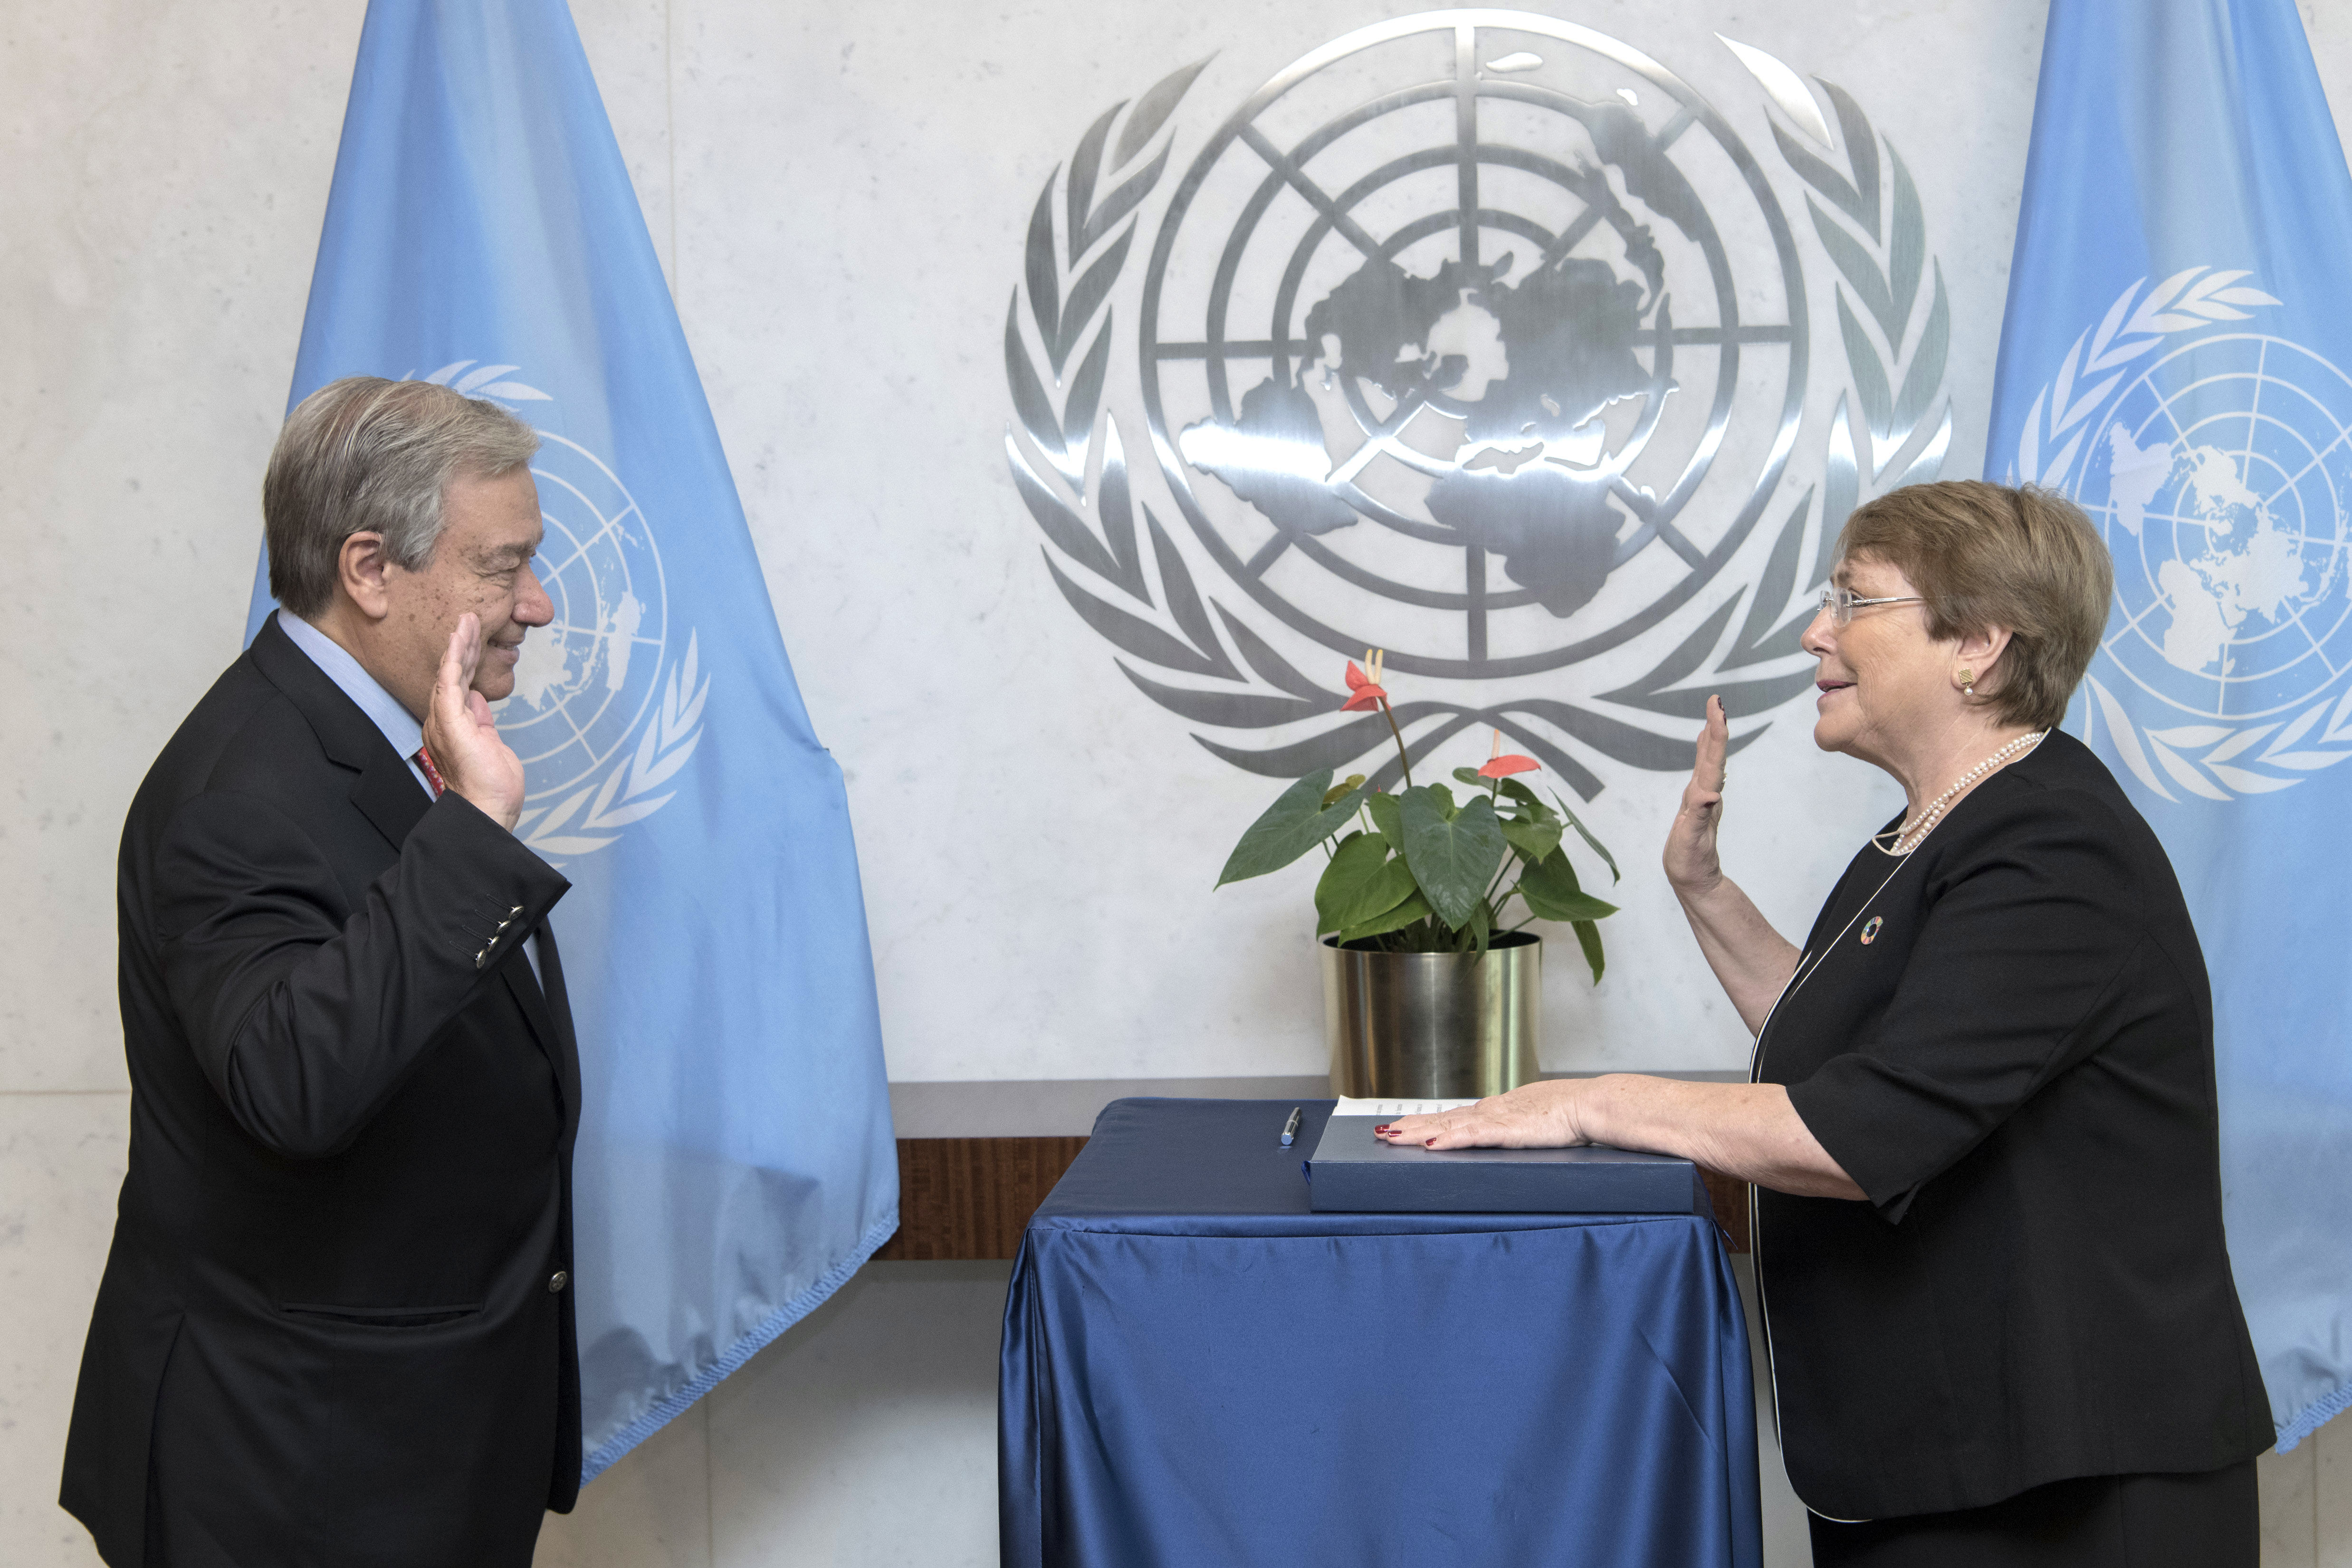 Bachelet jura en la ONU su cargo como alta comisionada de Derechos Humanos